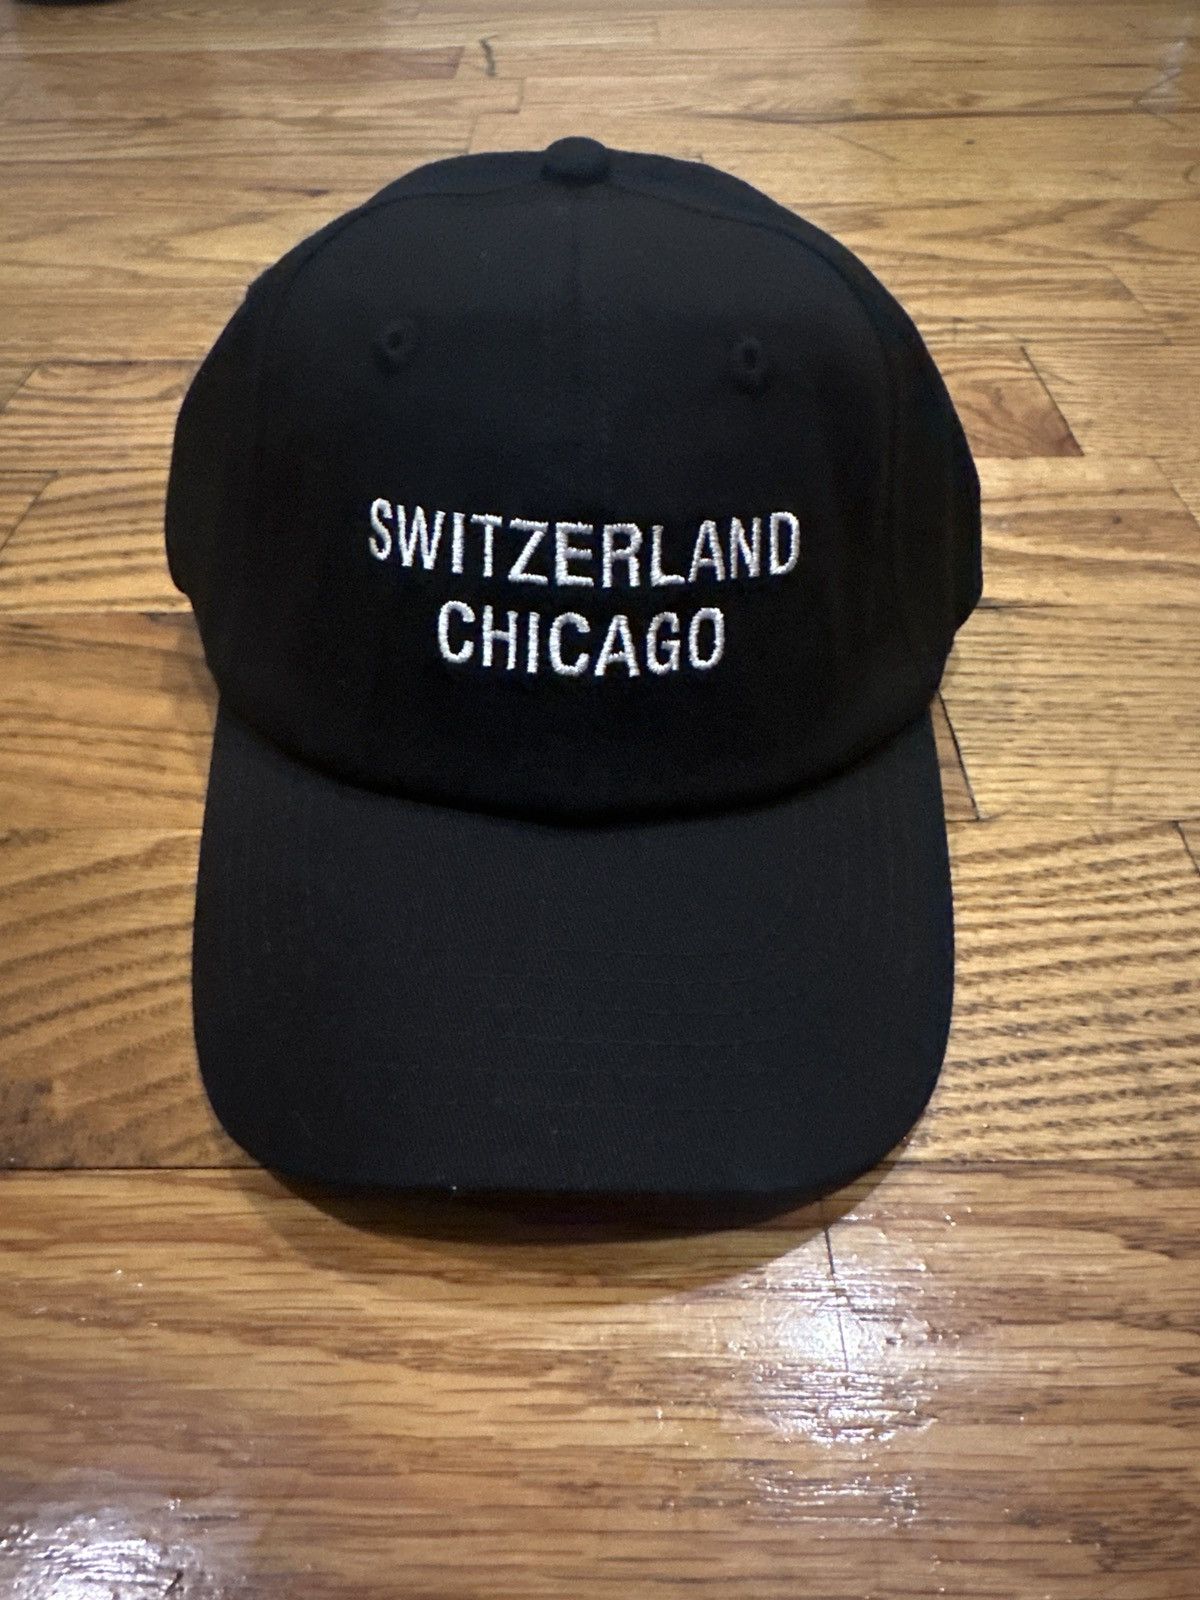 BENJAMIN EDGAR / Switzerland Chicago Hat 